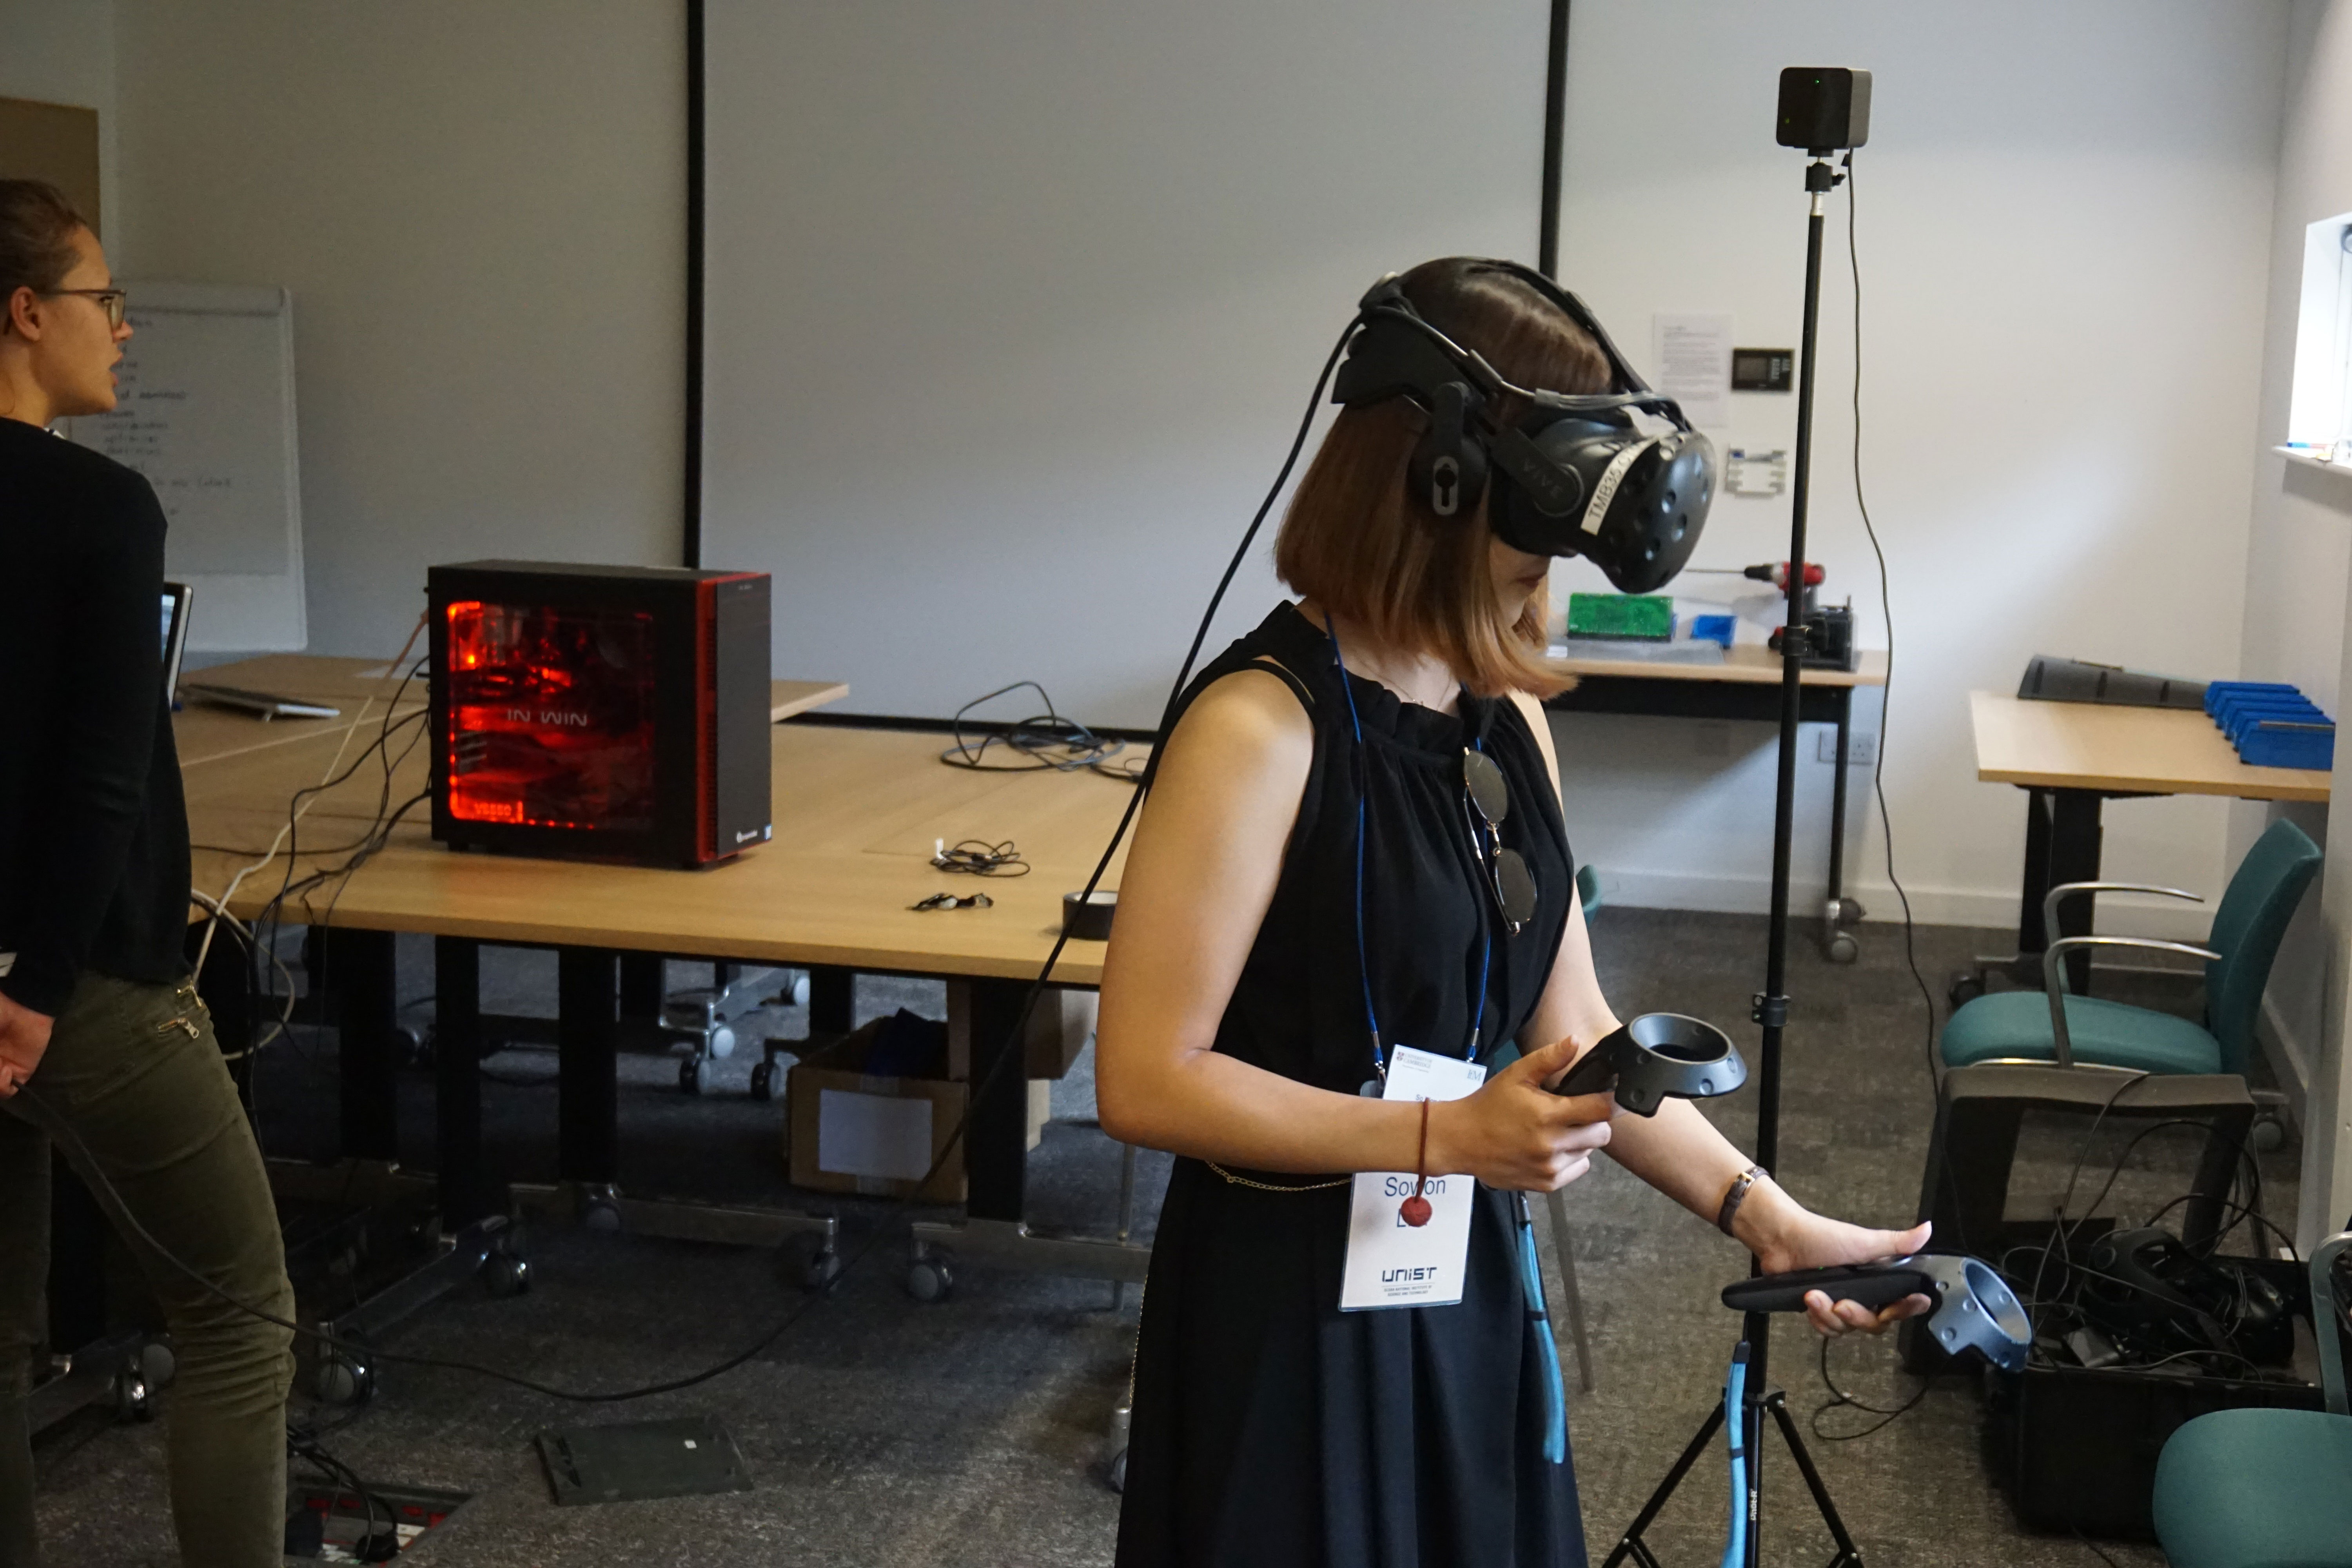 IfM 연구소에서 VR 체험을 진행하고 있는 모습 | 사진: 기술경영전문대학원 제공